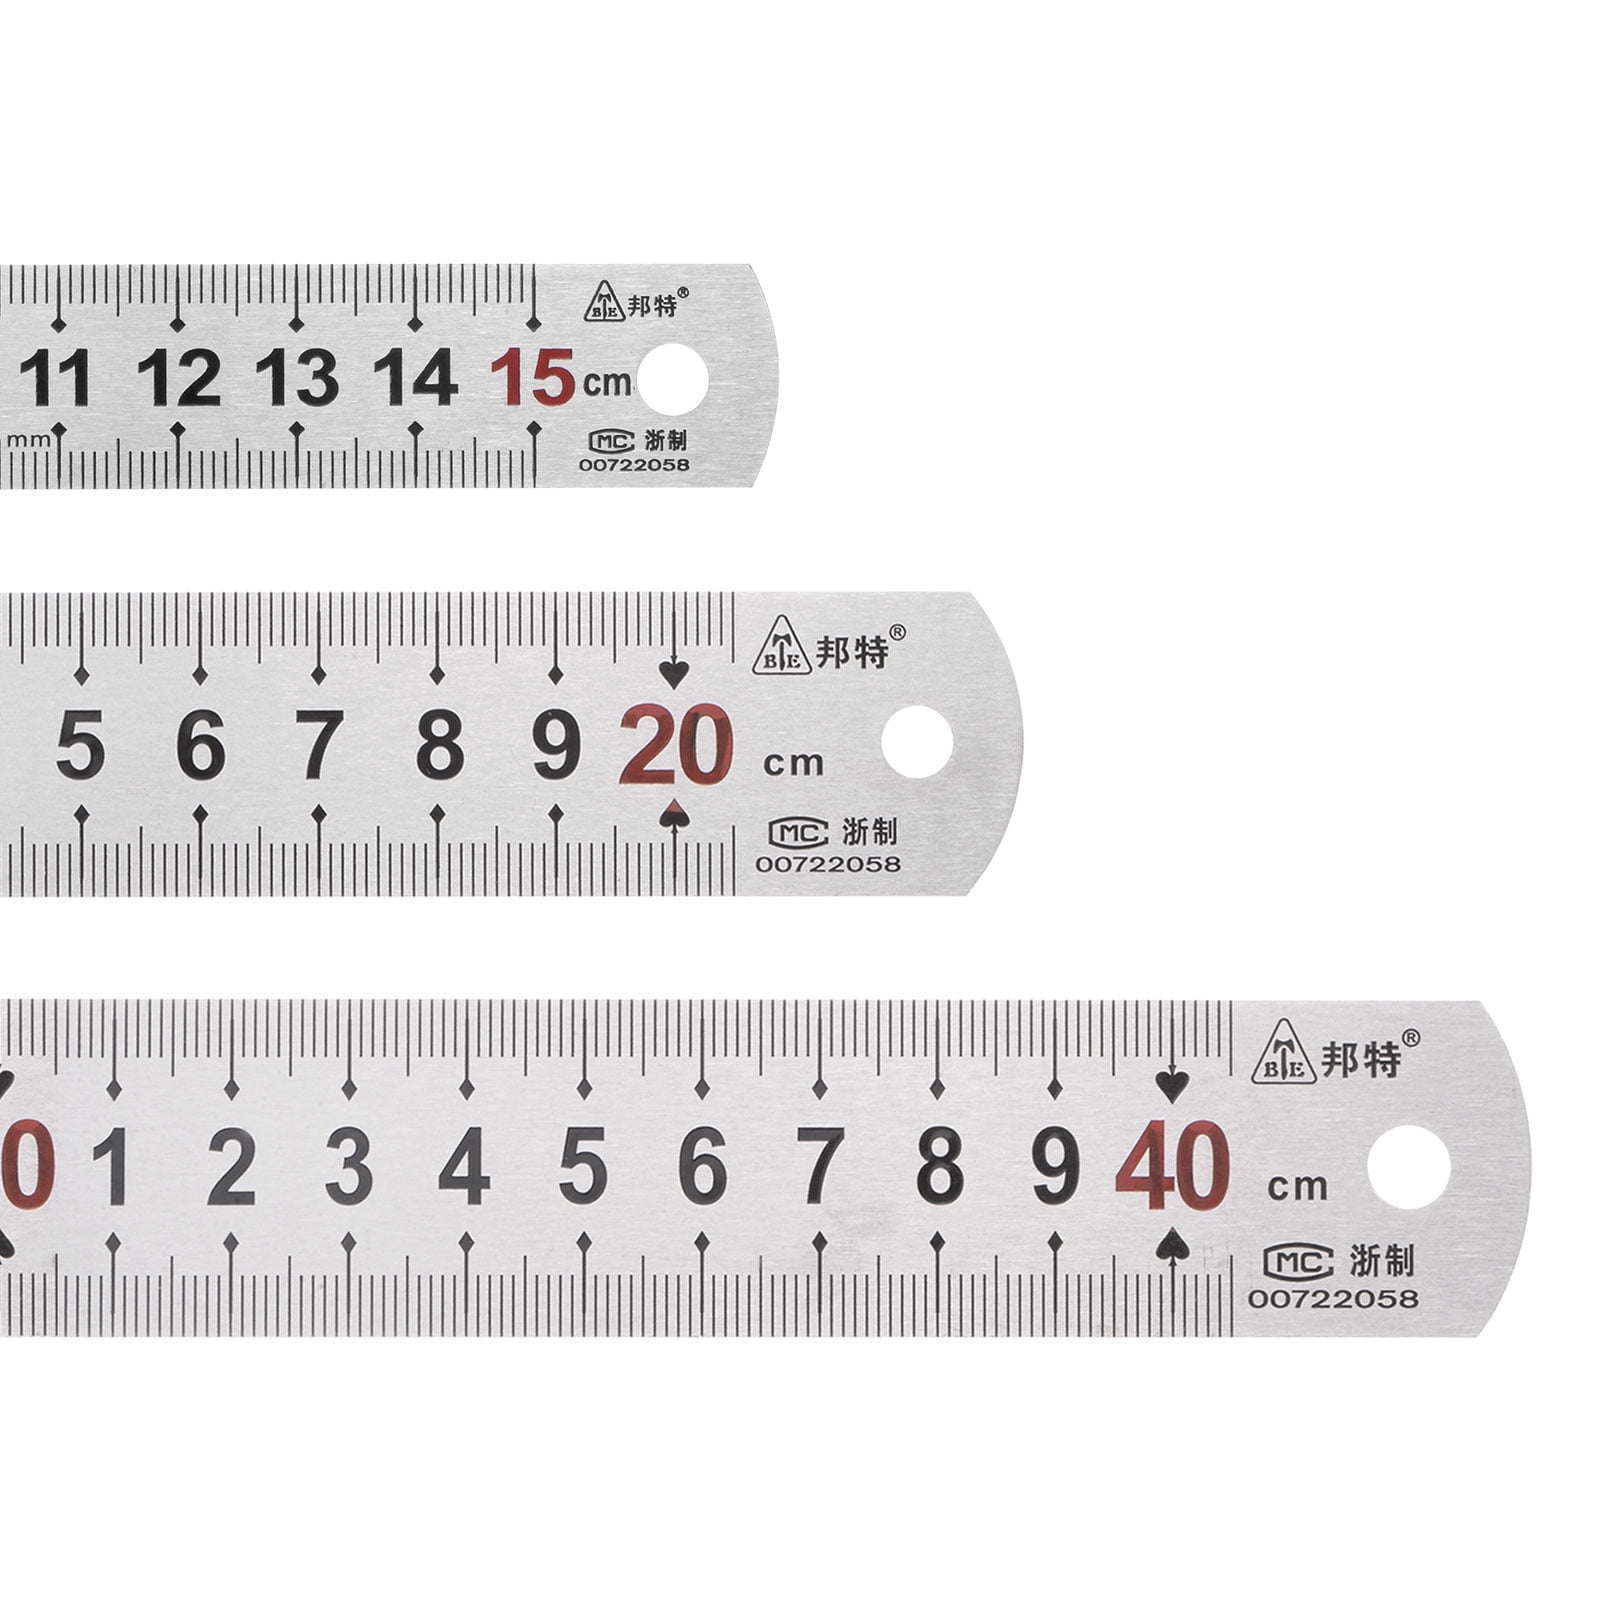 3Pcs rulers School Ruler for Kids Stainless Small Metal Ruler Centimeters  Ruler 3 in 1 Measure Rolling Ruler Metal Meter Stick Metallic Ruler Yard